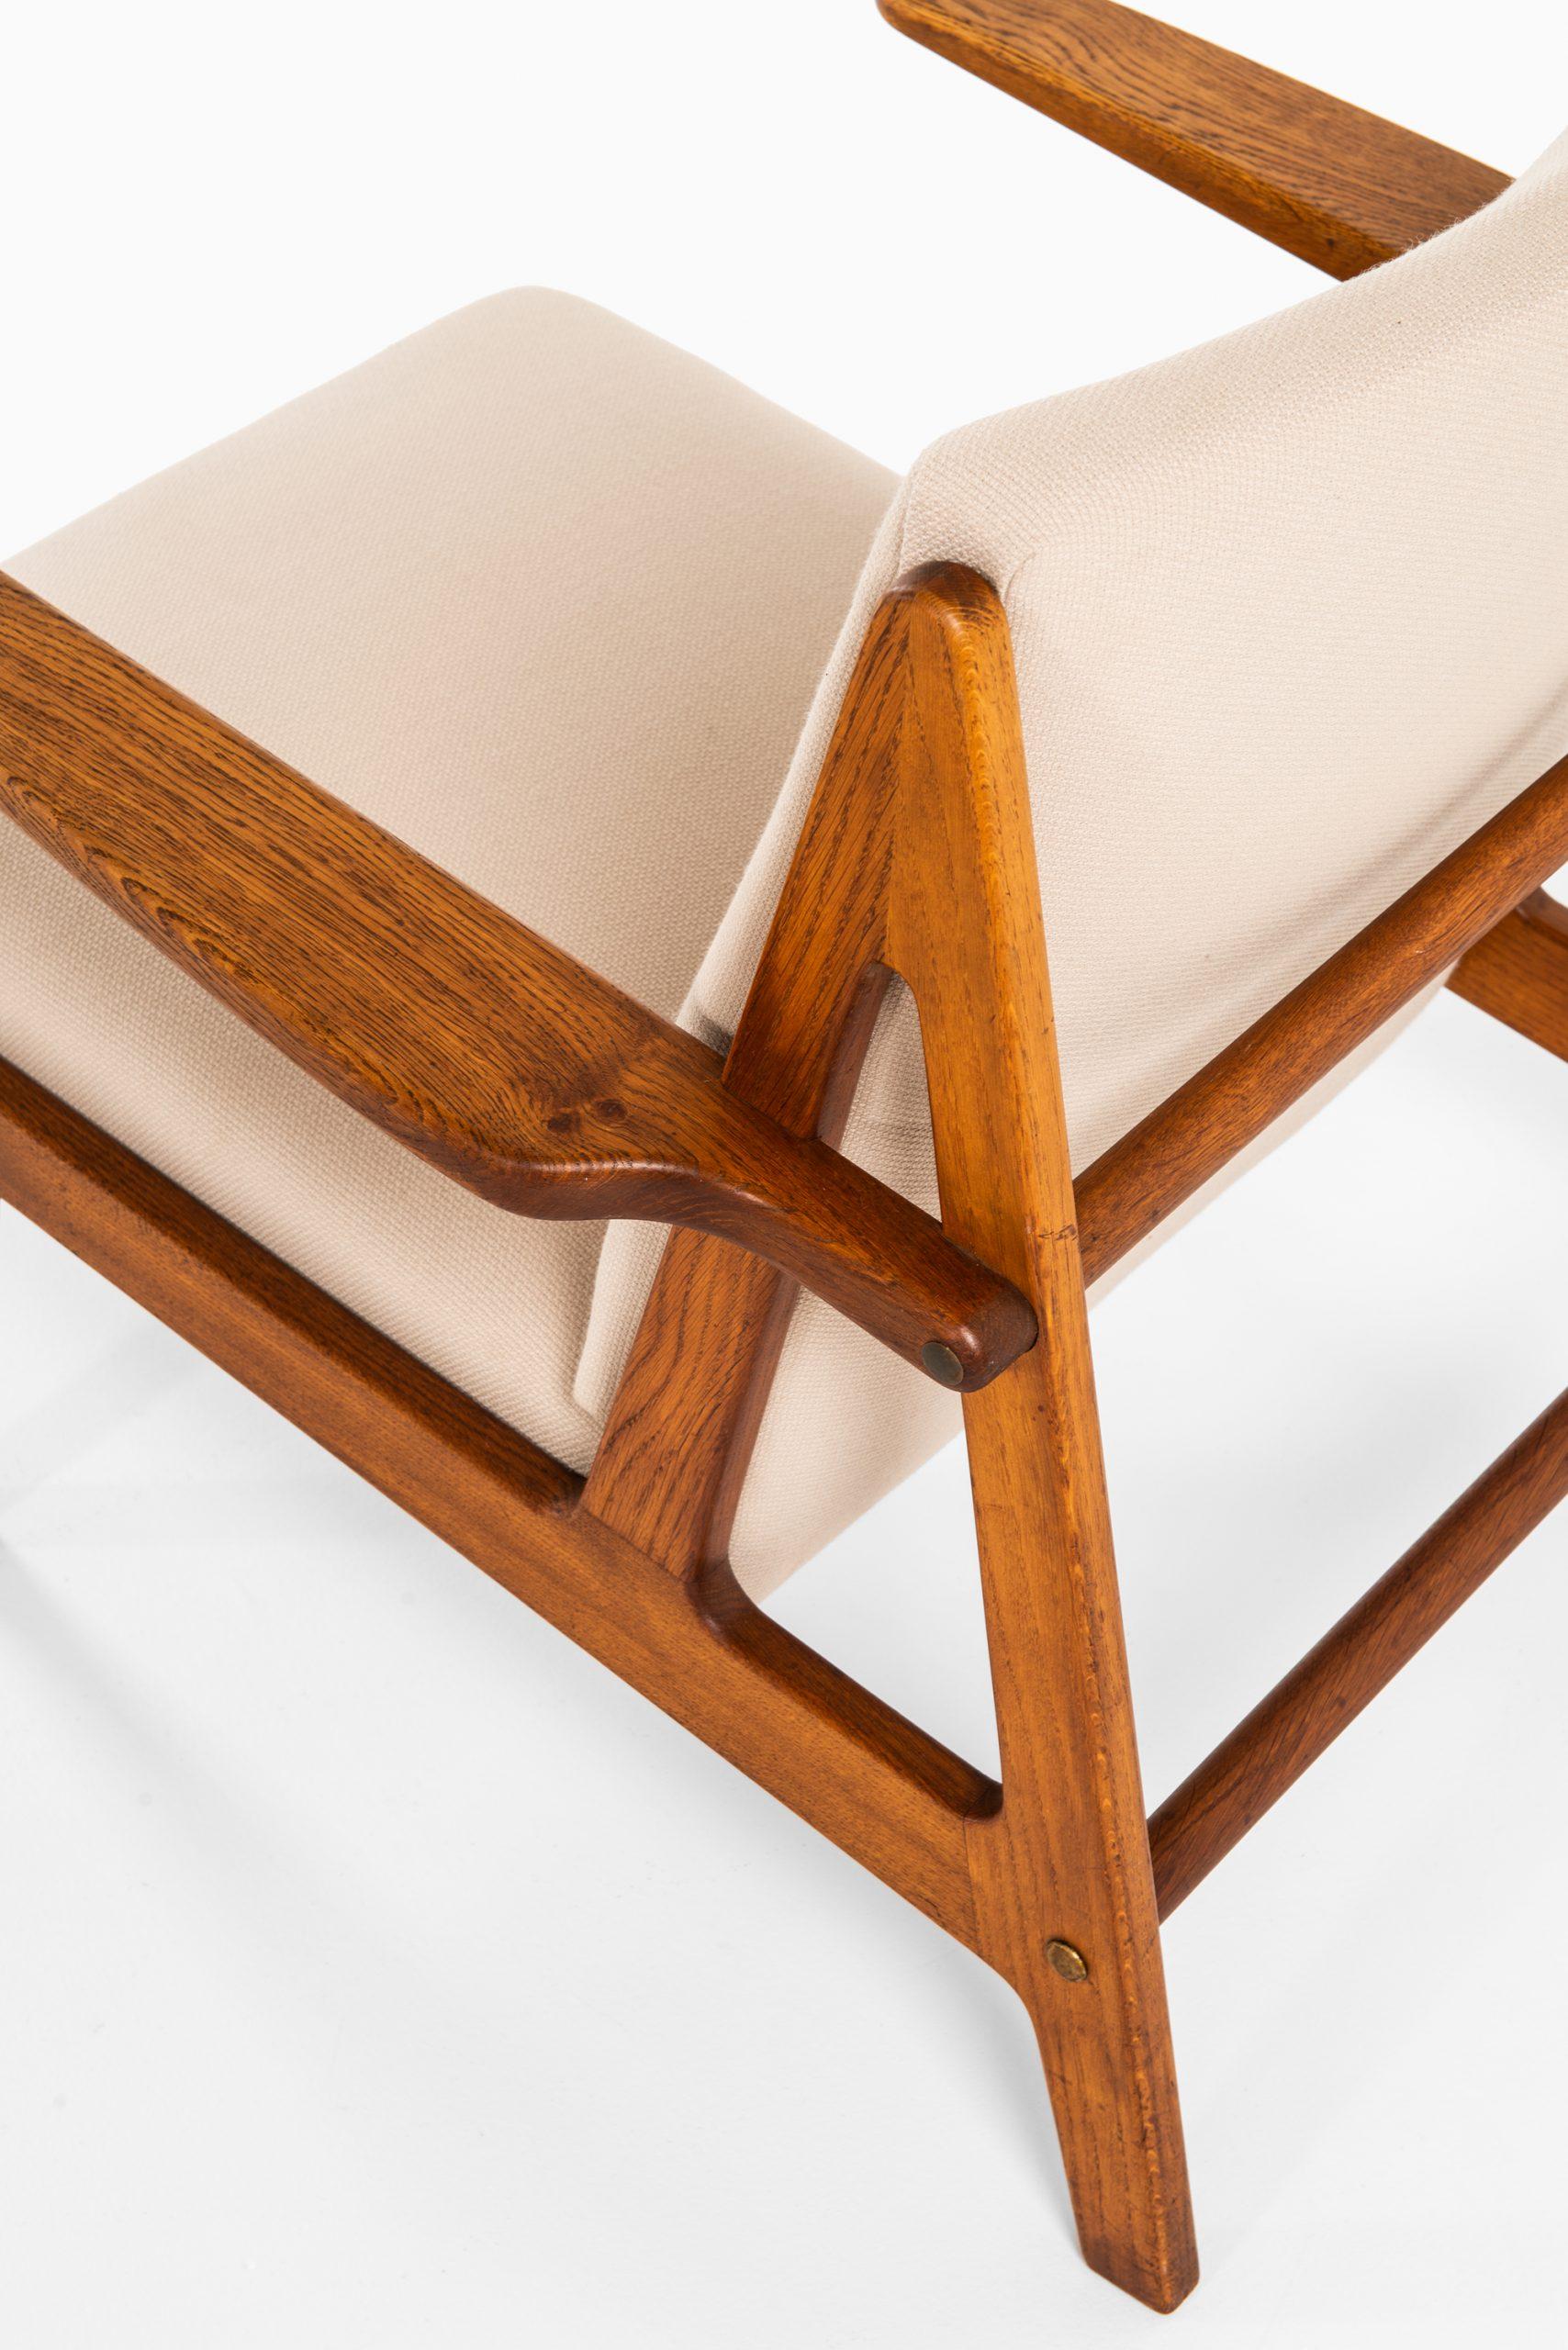 Brge Mogensen Easy Chair Hergestellt von Tage Kristensen & Co in Dänemark (Skandinavische Moderne) im Angebot